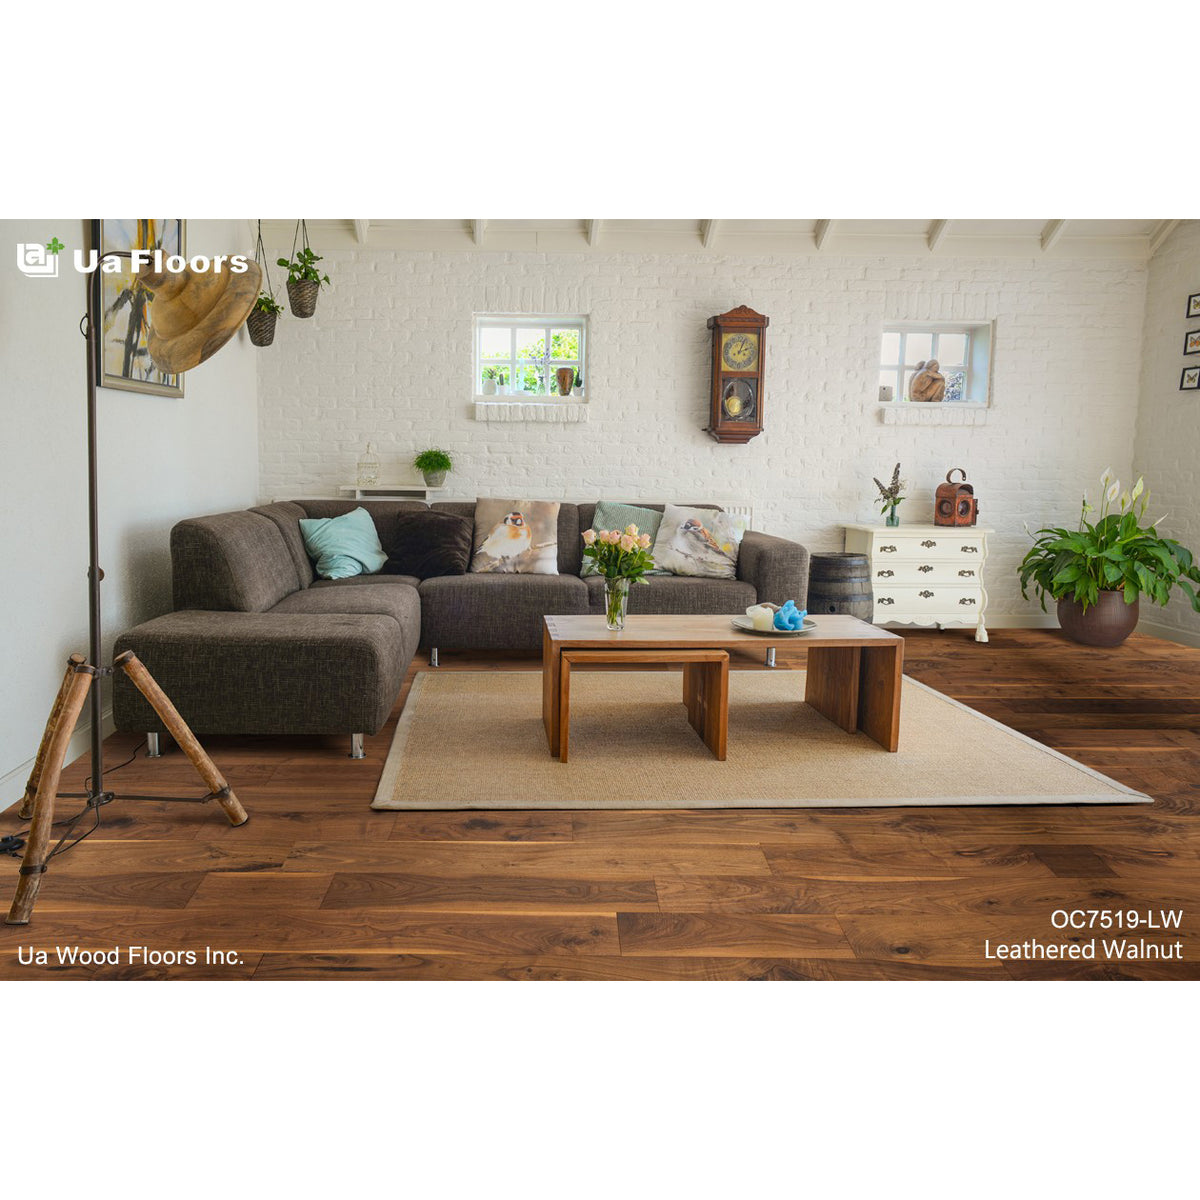 Ua Floors - Olde Charleston Traditional - Leathered Walnut Room Scene